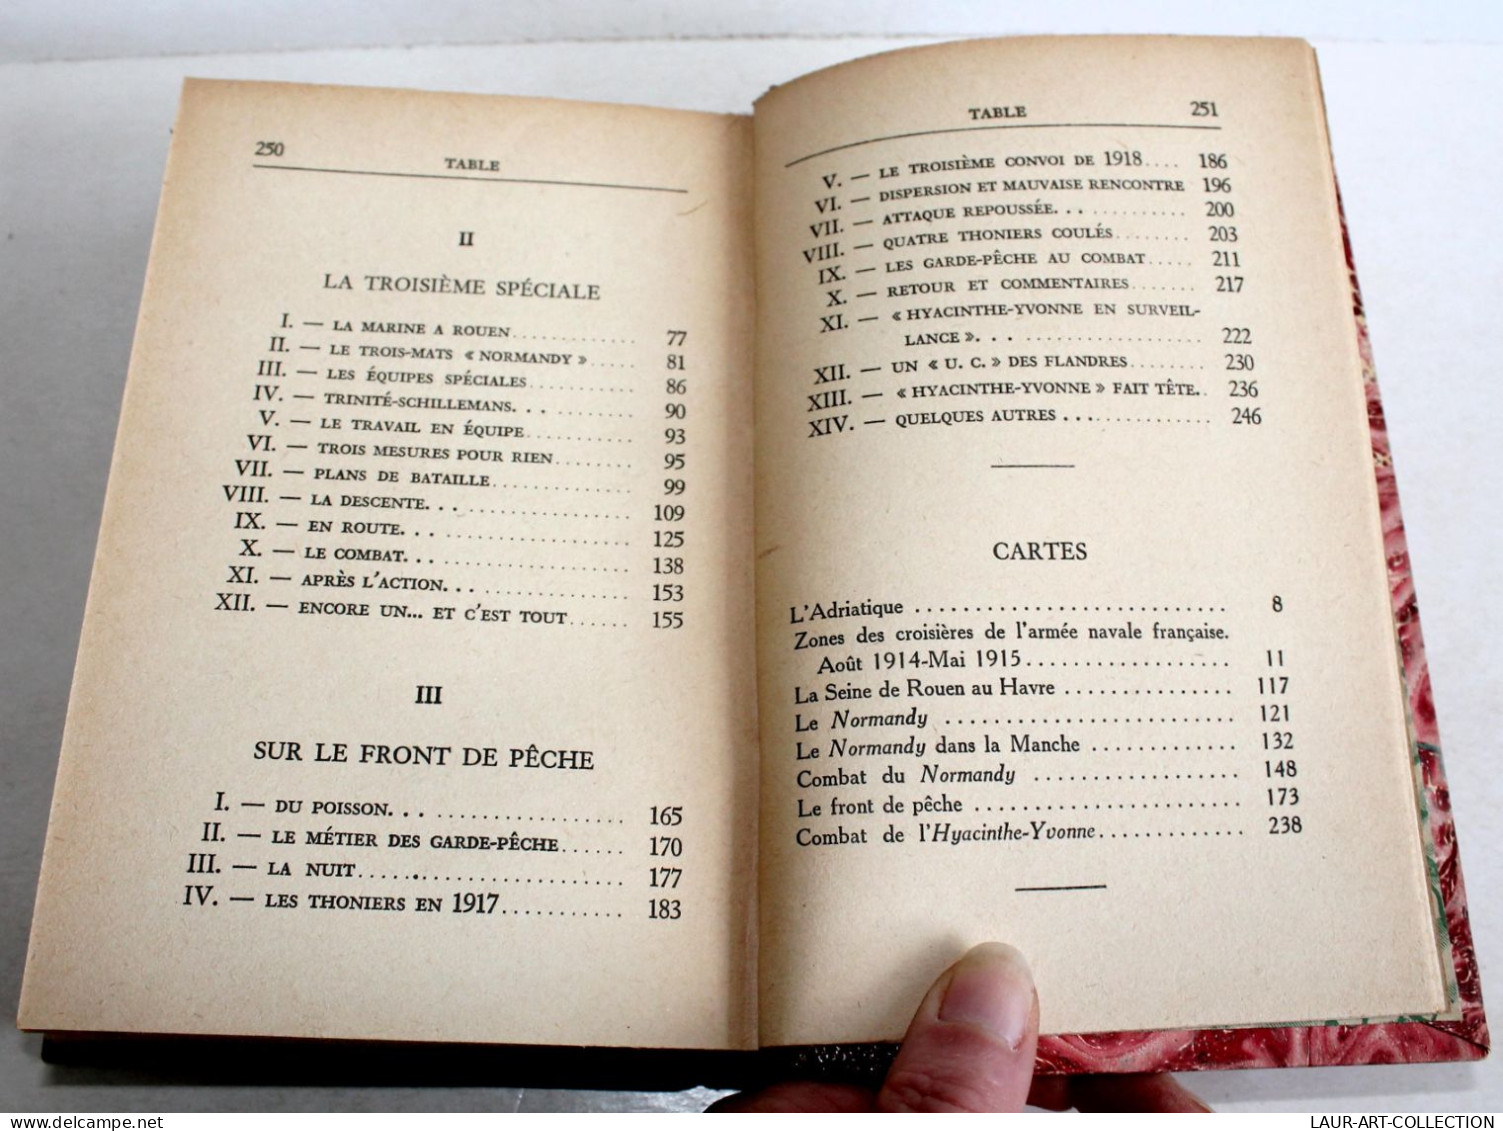 BRANLEBAS DE COMBAT de PAUL CHACK AVEC 8 CROQUIS DRESSÉS 1932 EDITIONS DE FRANCE / LIVRE ANCIEN XXe SIECLE (1303.41)